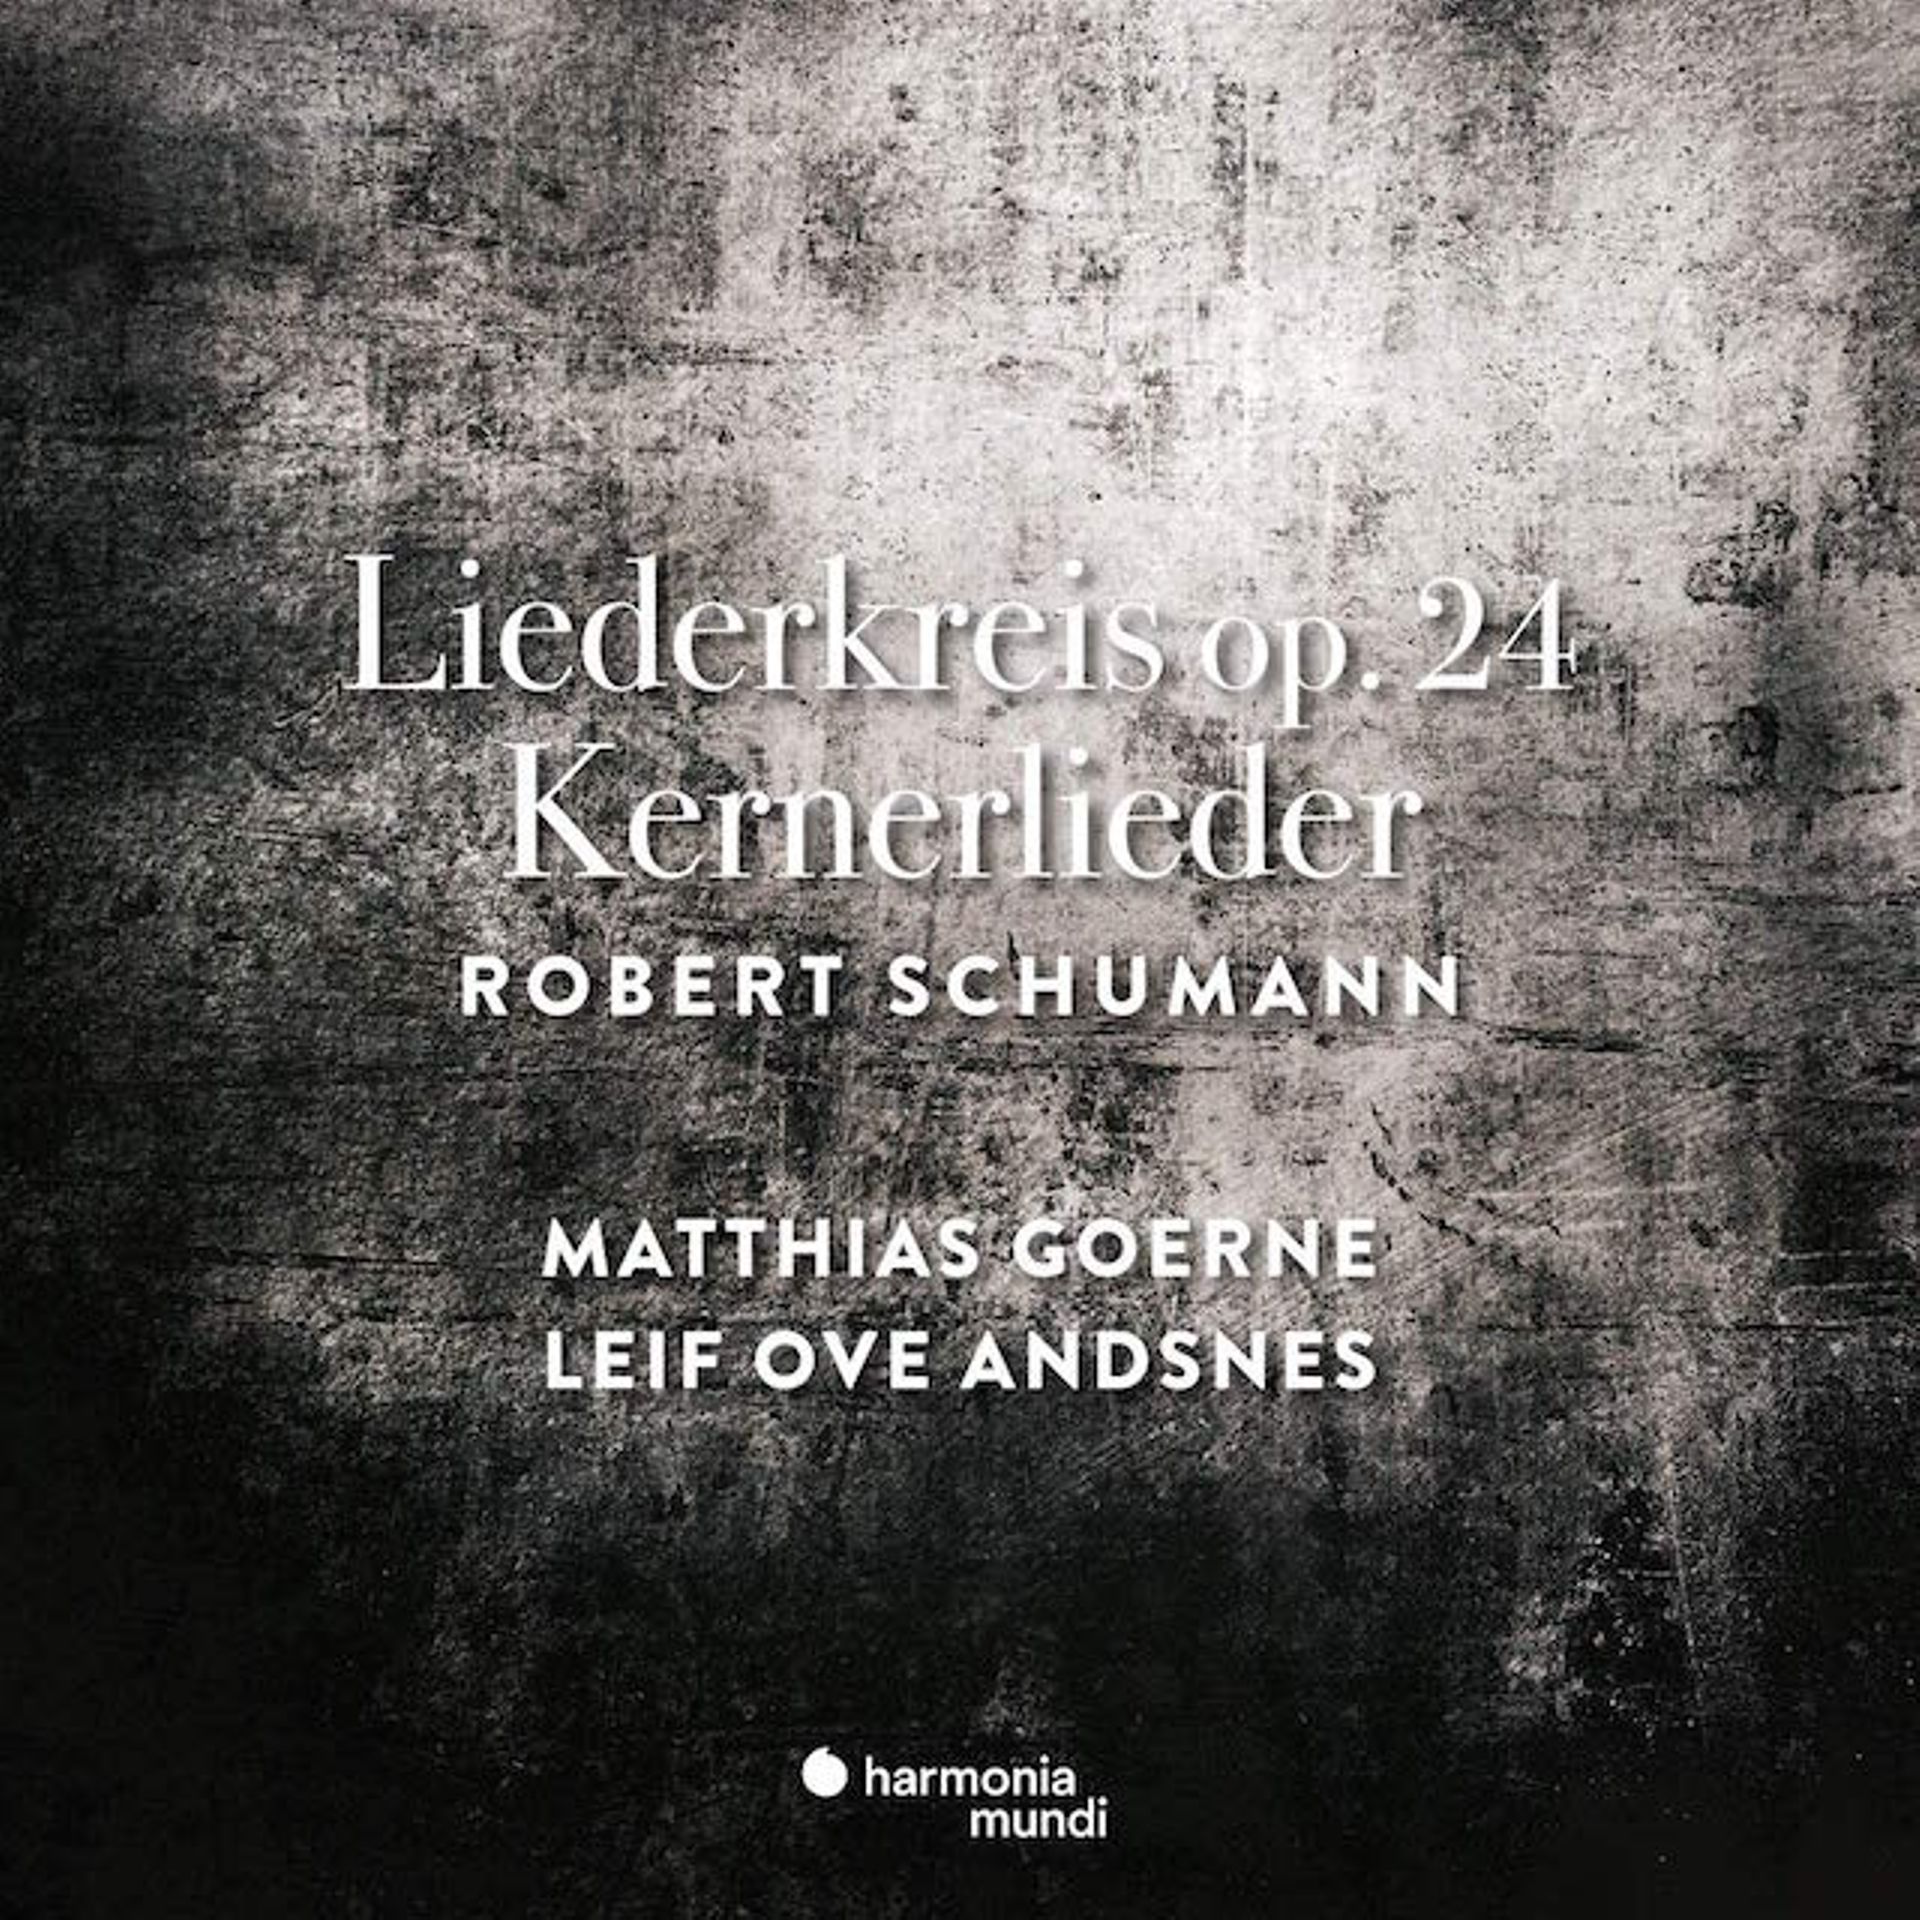 Robert Schumann - Liederkreis, Kernerlieder par Matthias Goerne, Leif Ove Andsnes chez Harmonia Mundi 